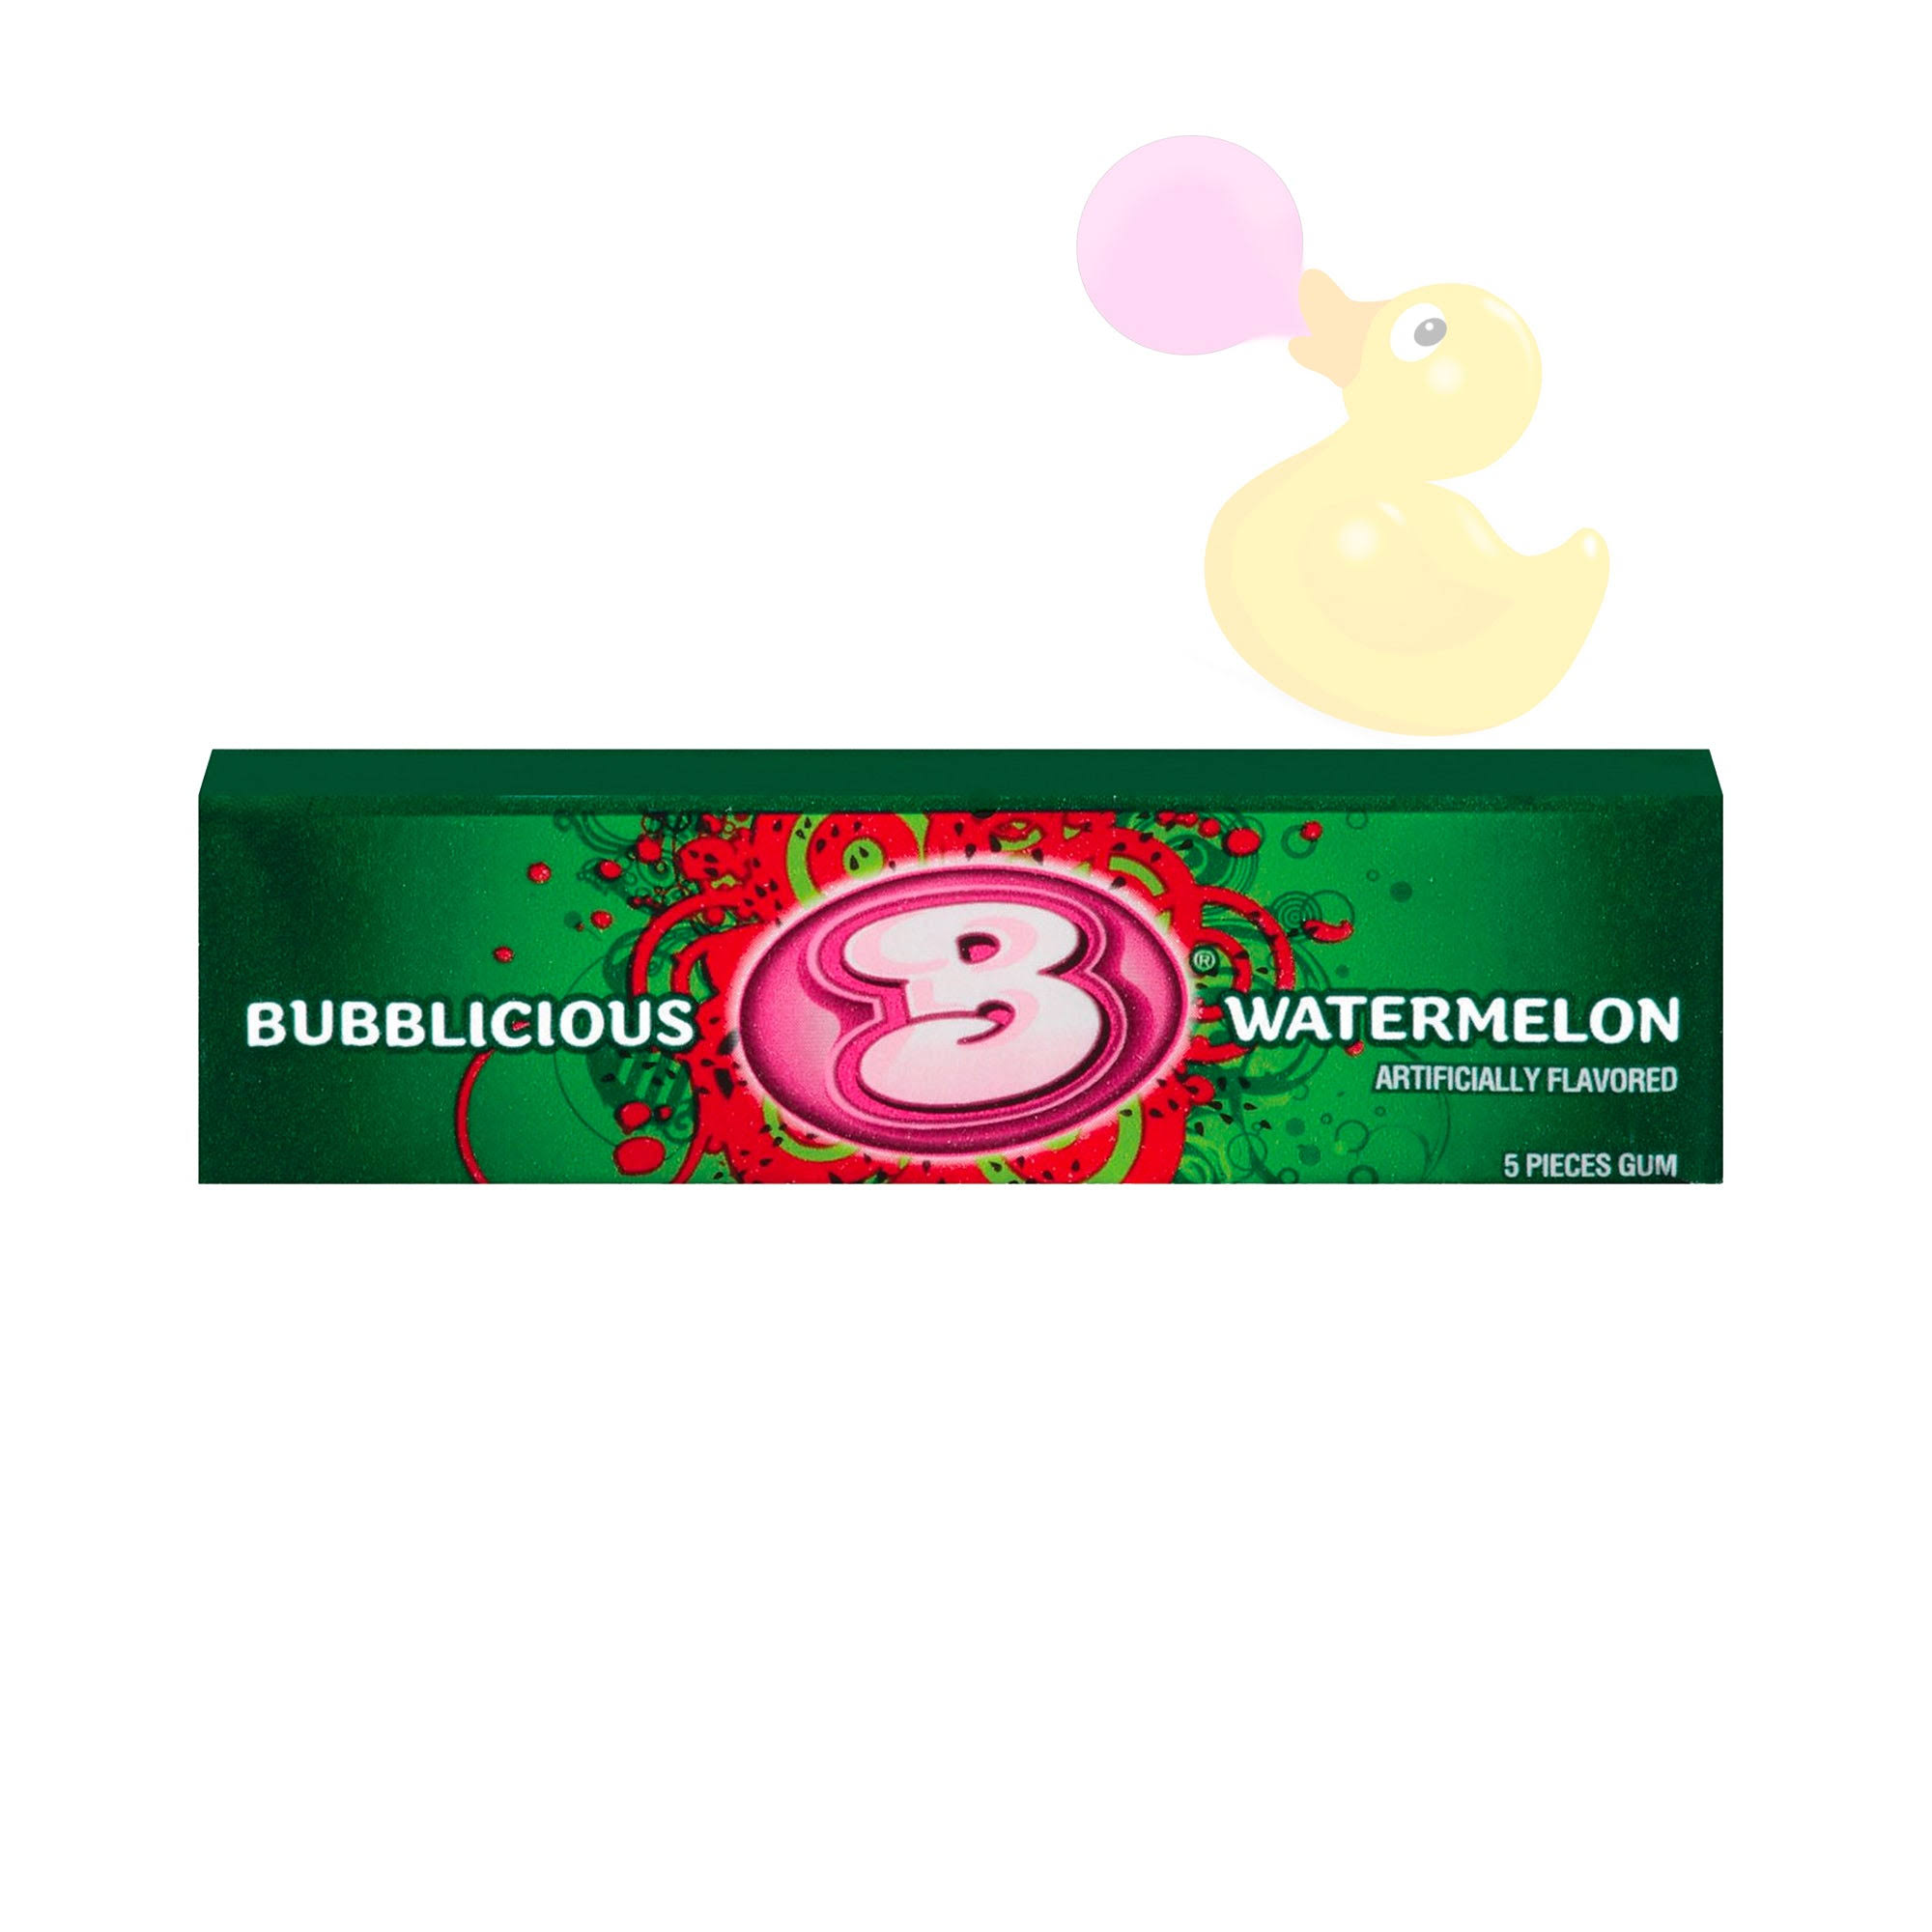 Bubblicious Bubble Gum - Watermelon, 5 Pieces